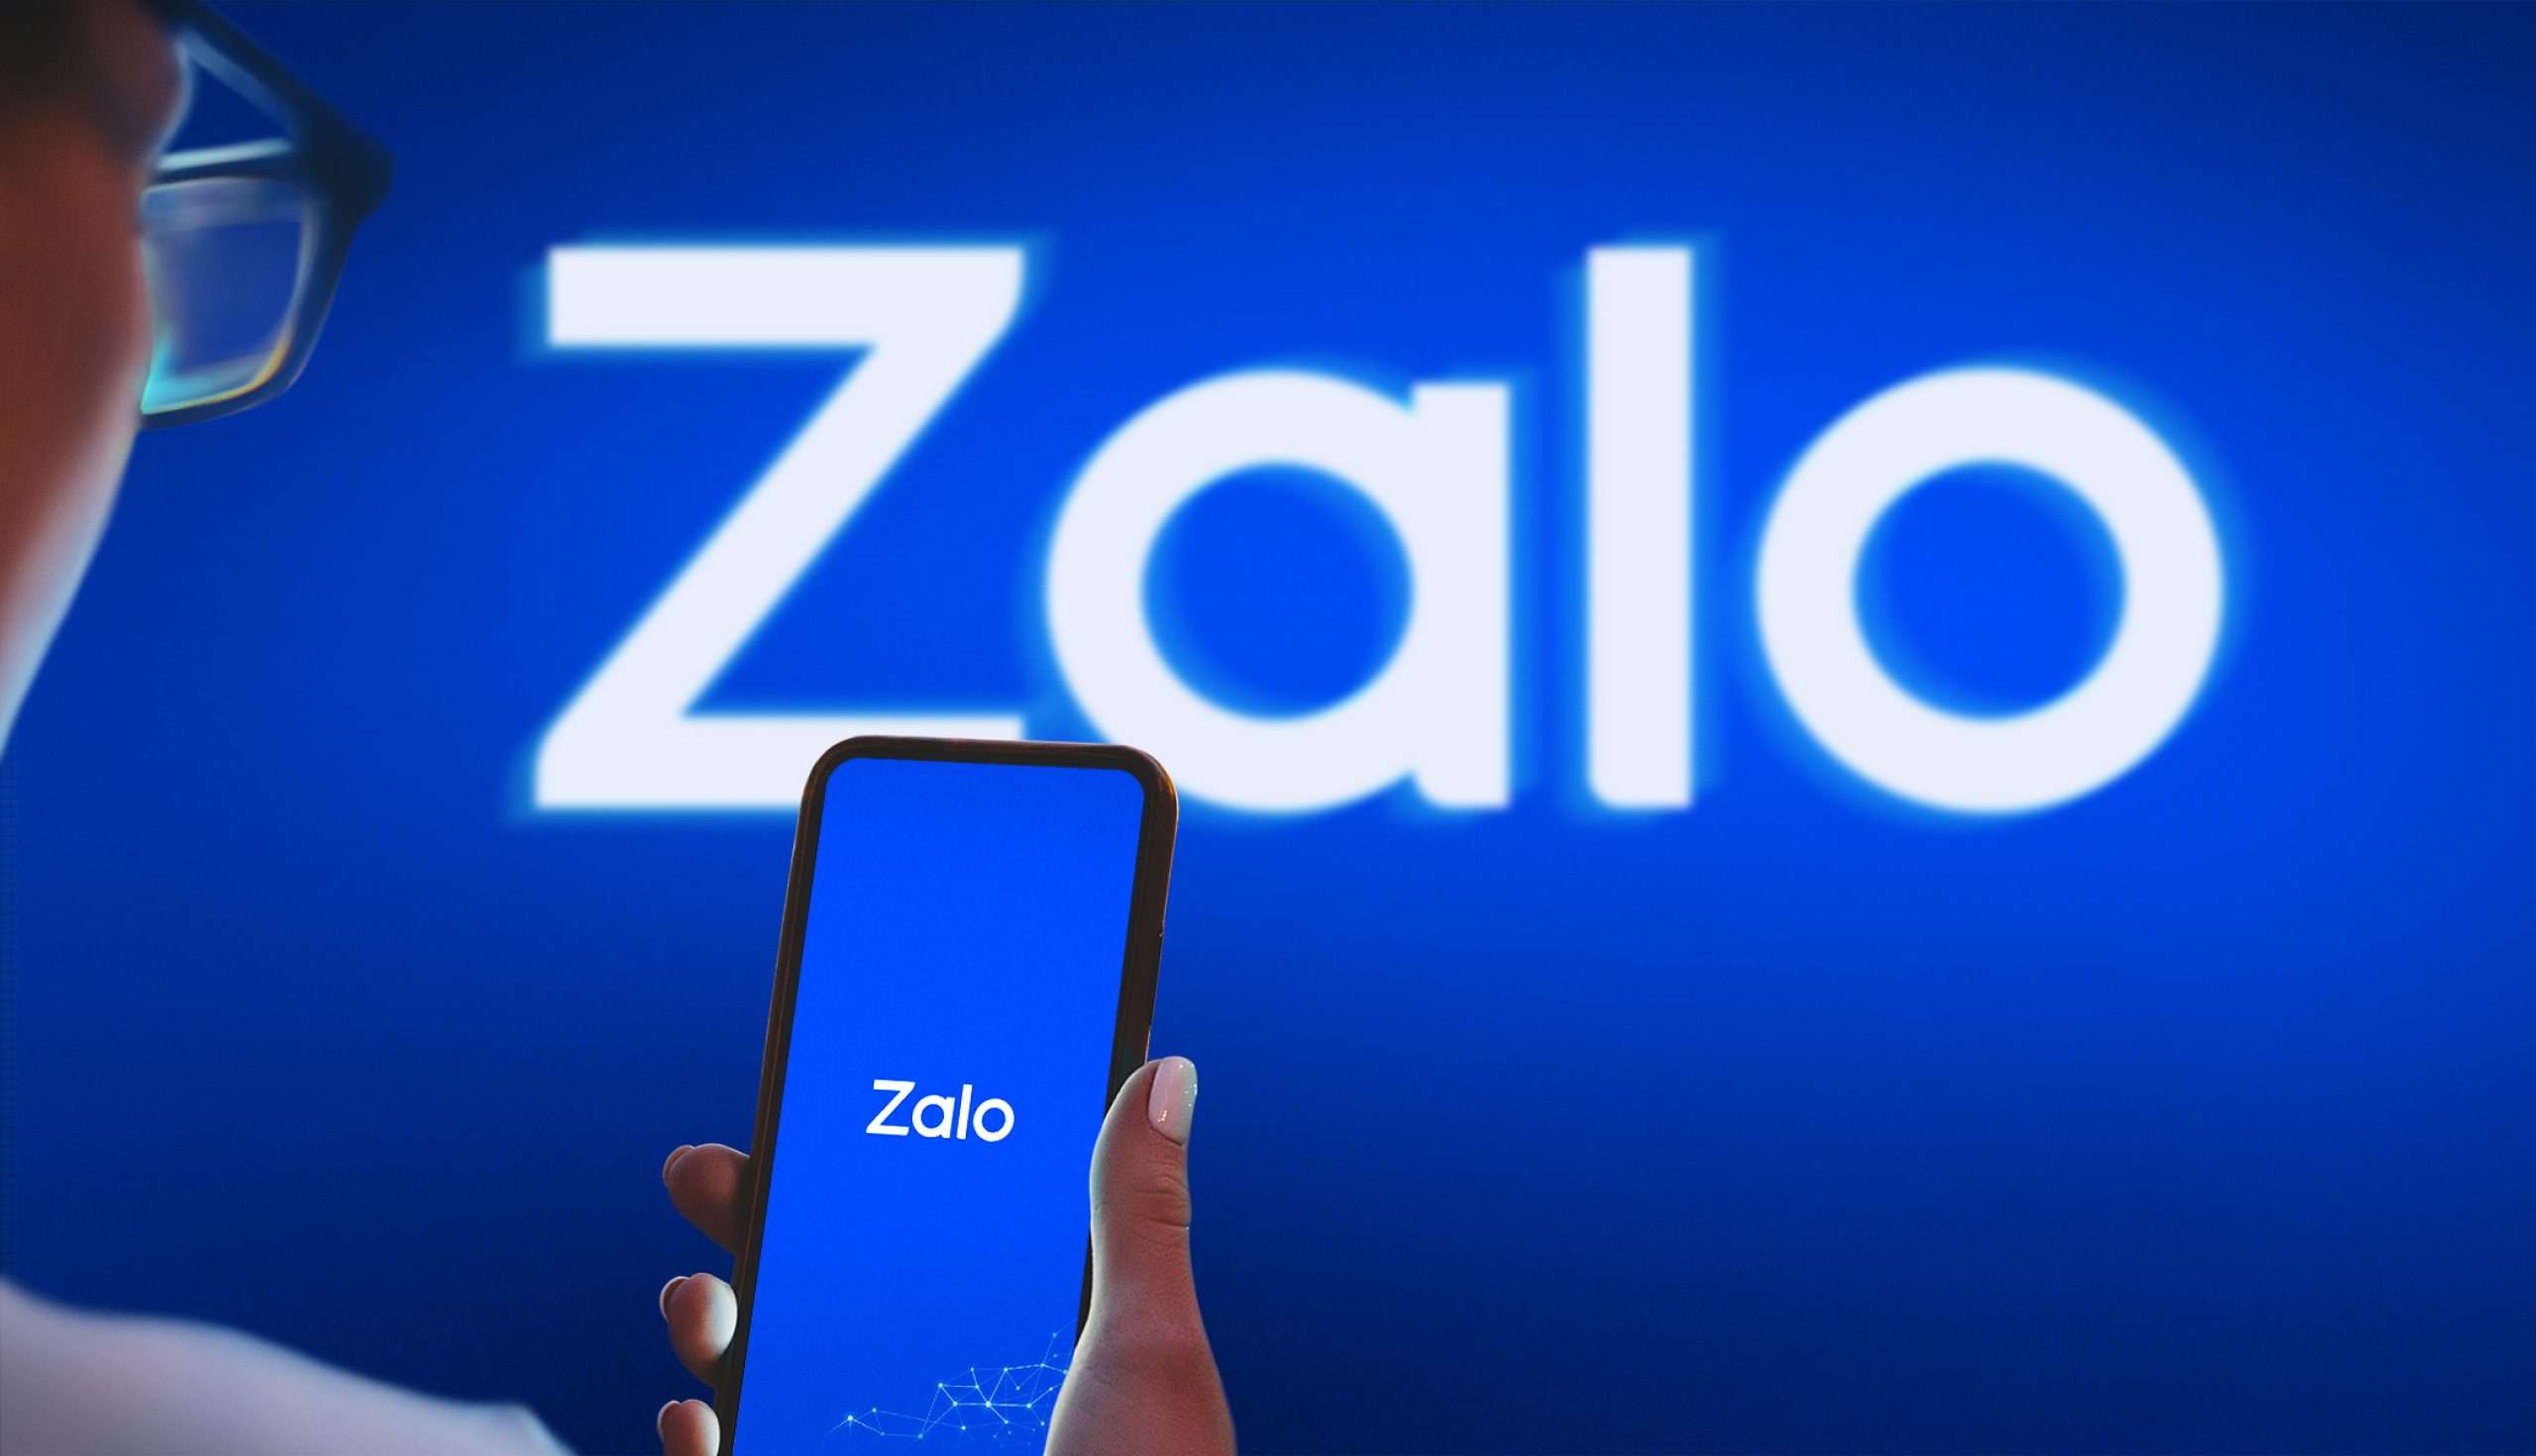 Zalo Business là gì? Hướng dẫn cách tạo, cài đặt và sử dụng Zalo Business